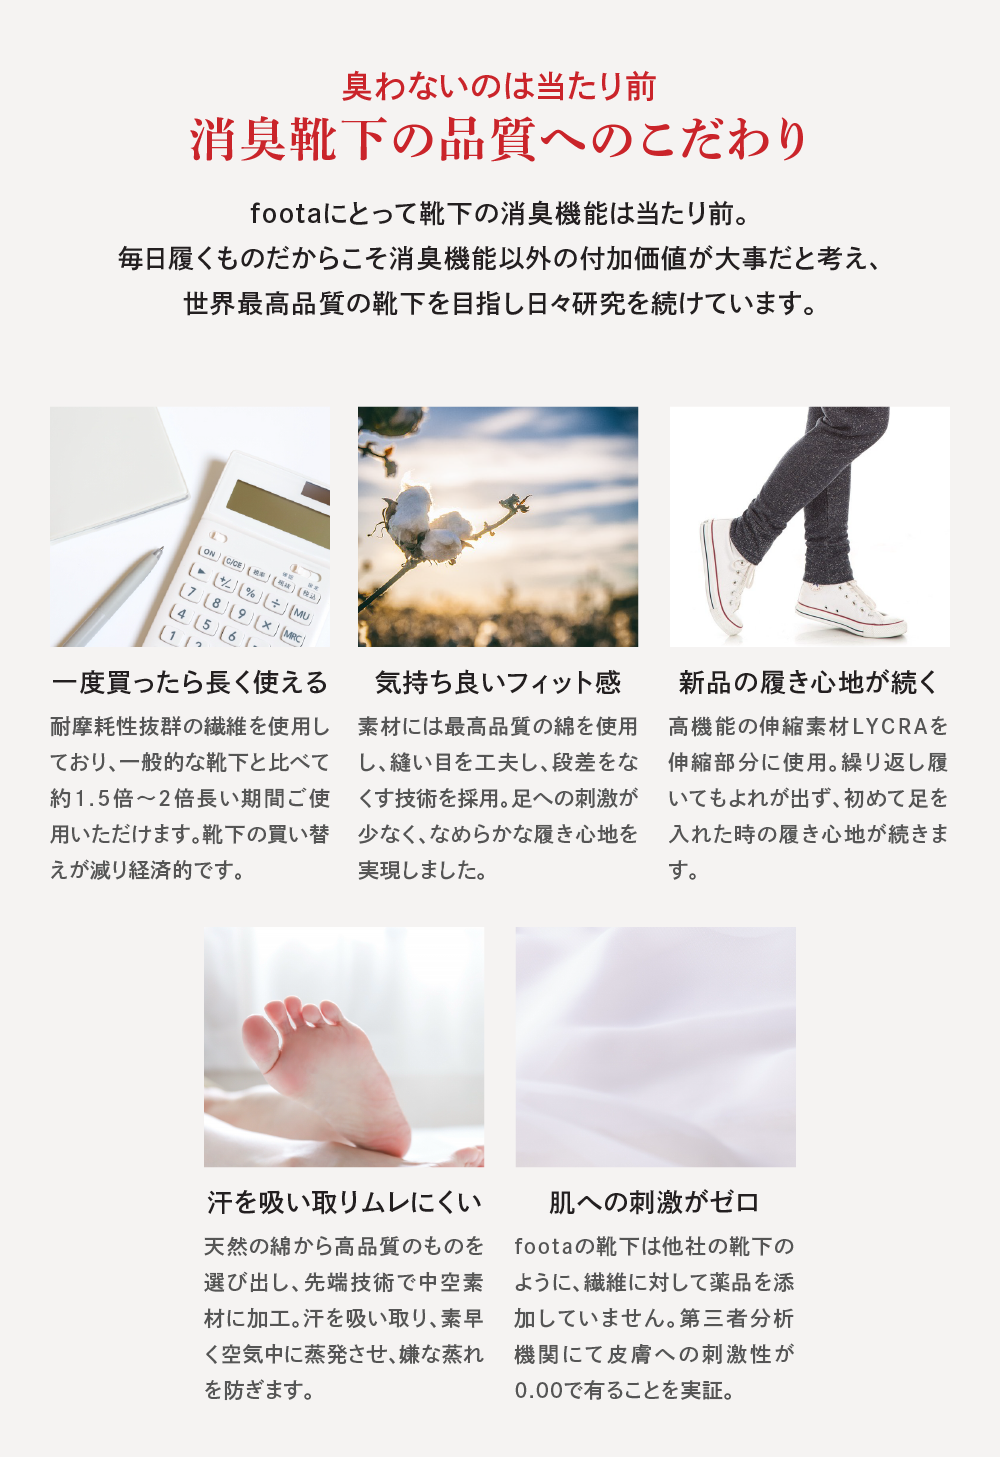 インソール/中敷き - 消臭靴下 foota japan公式通販サイト